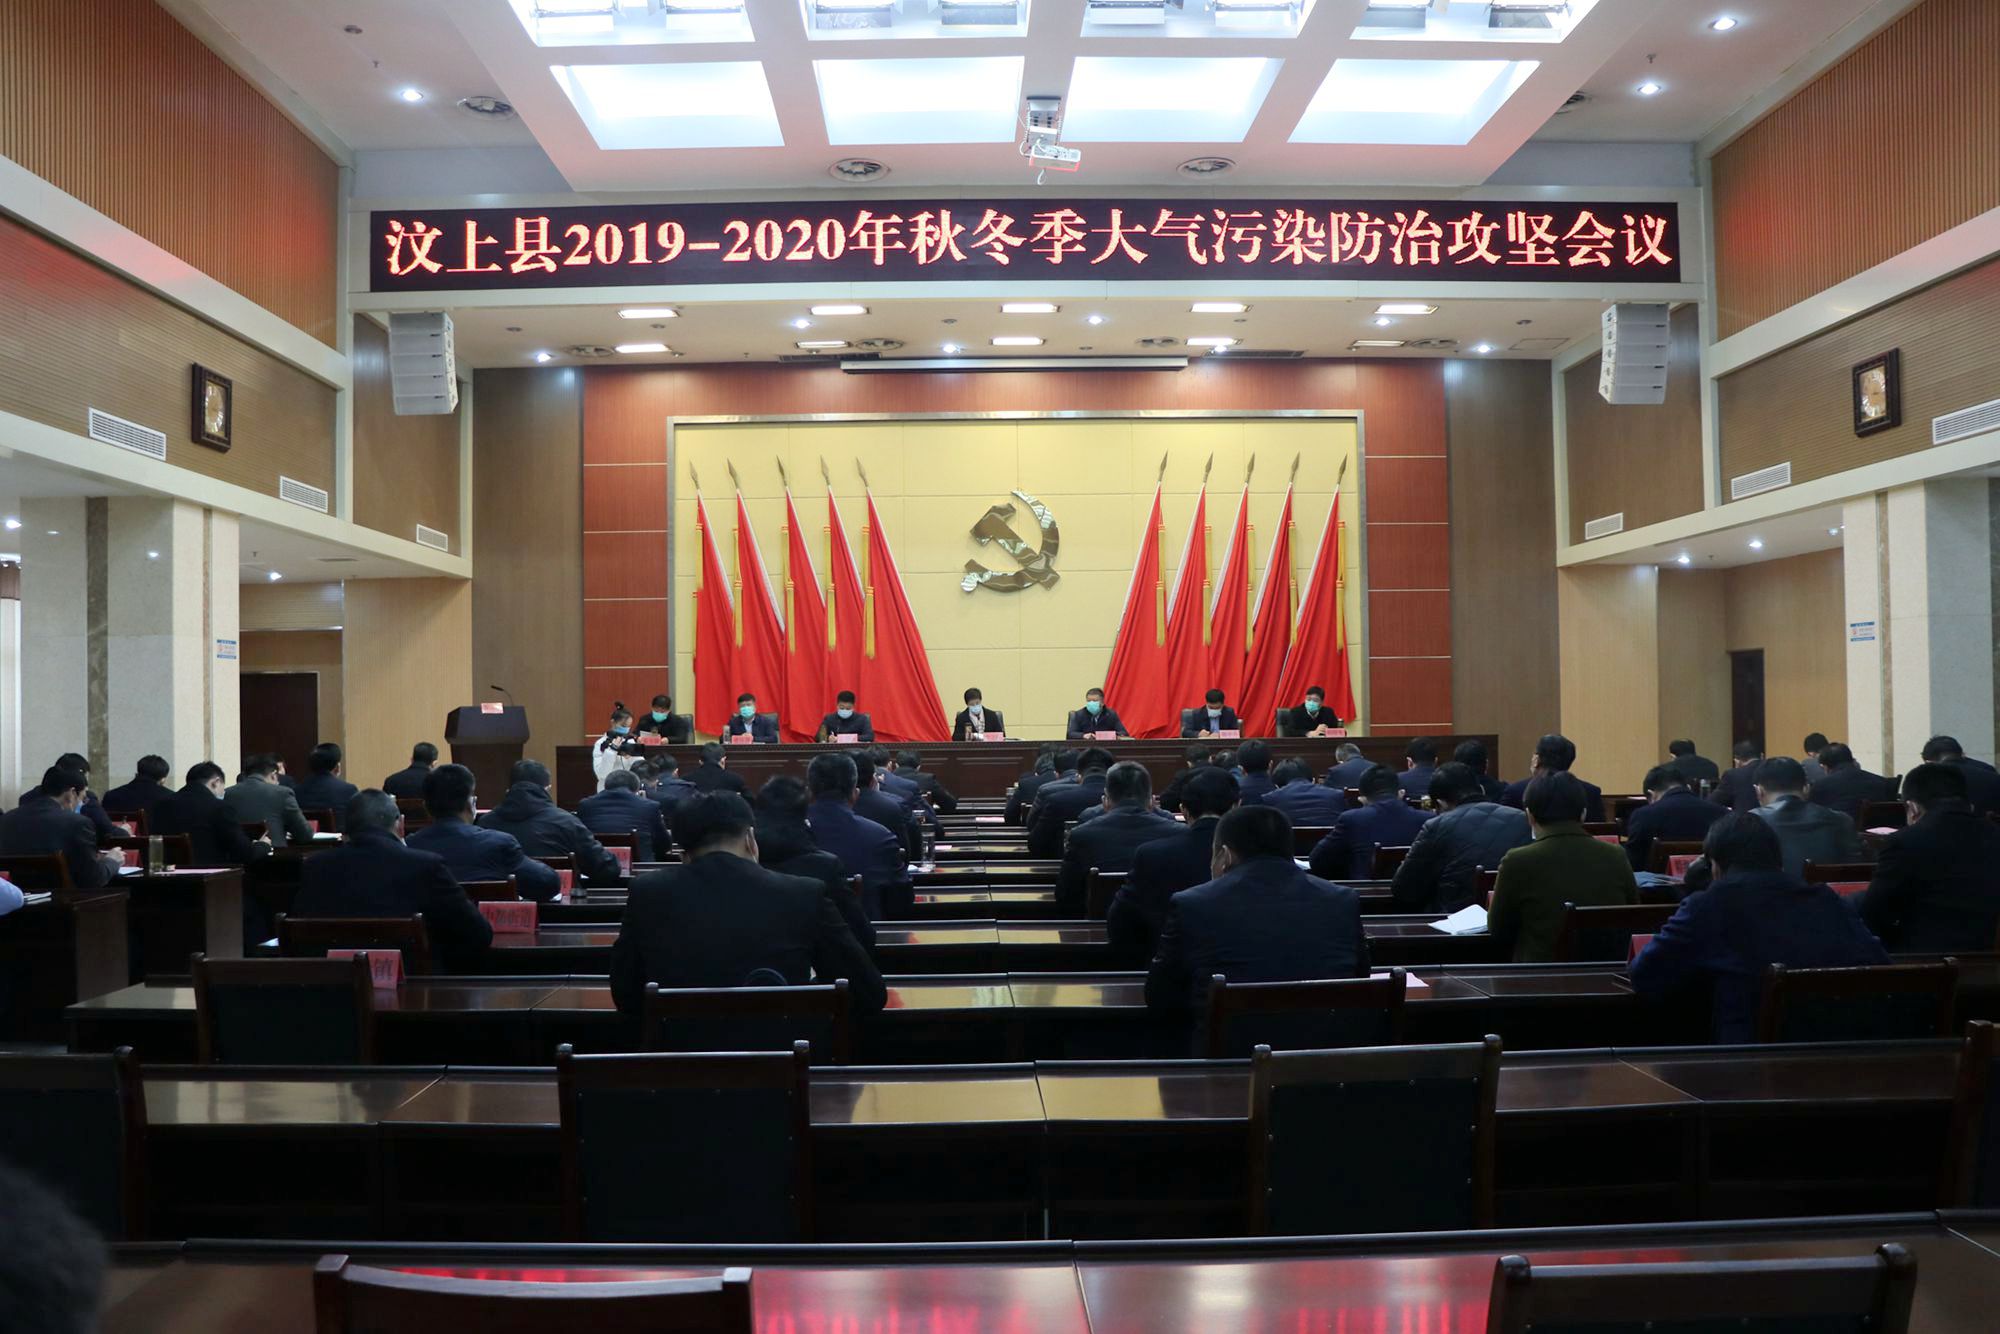 汶上县召开20192020年秋冬季大气污染防治攻坚会议